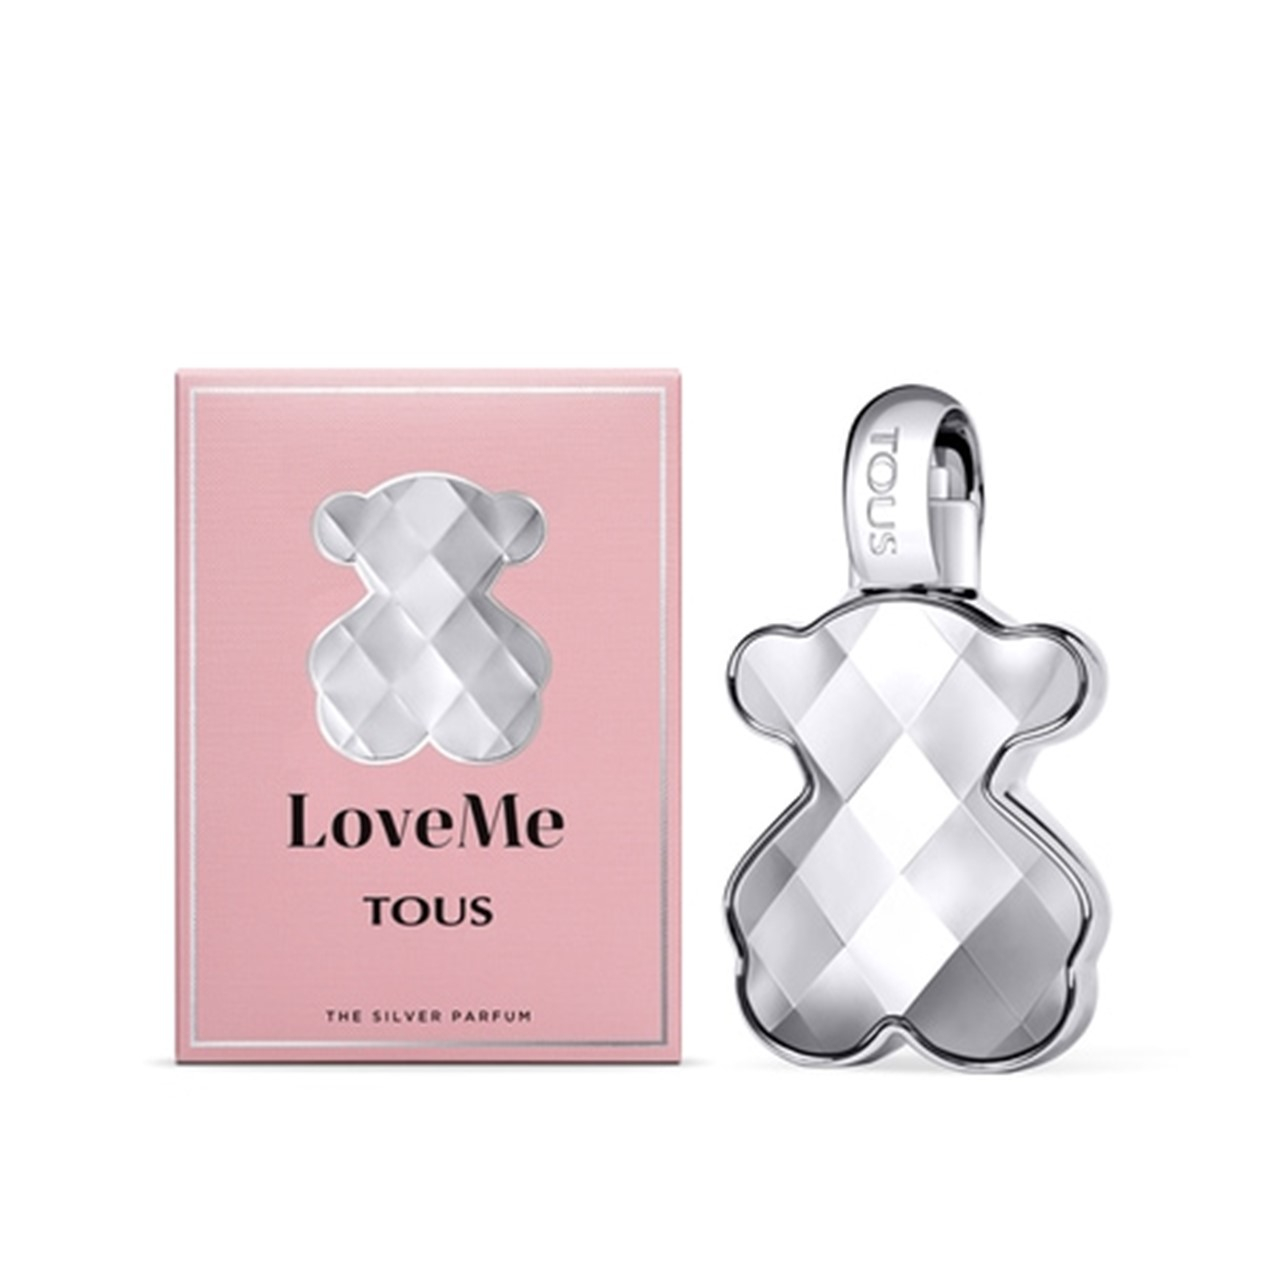 Tous LoveMe The Silver Parfum 30ml